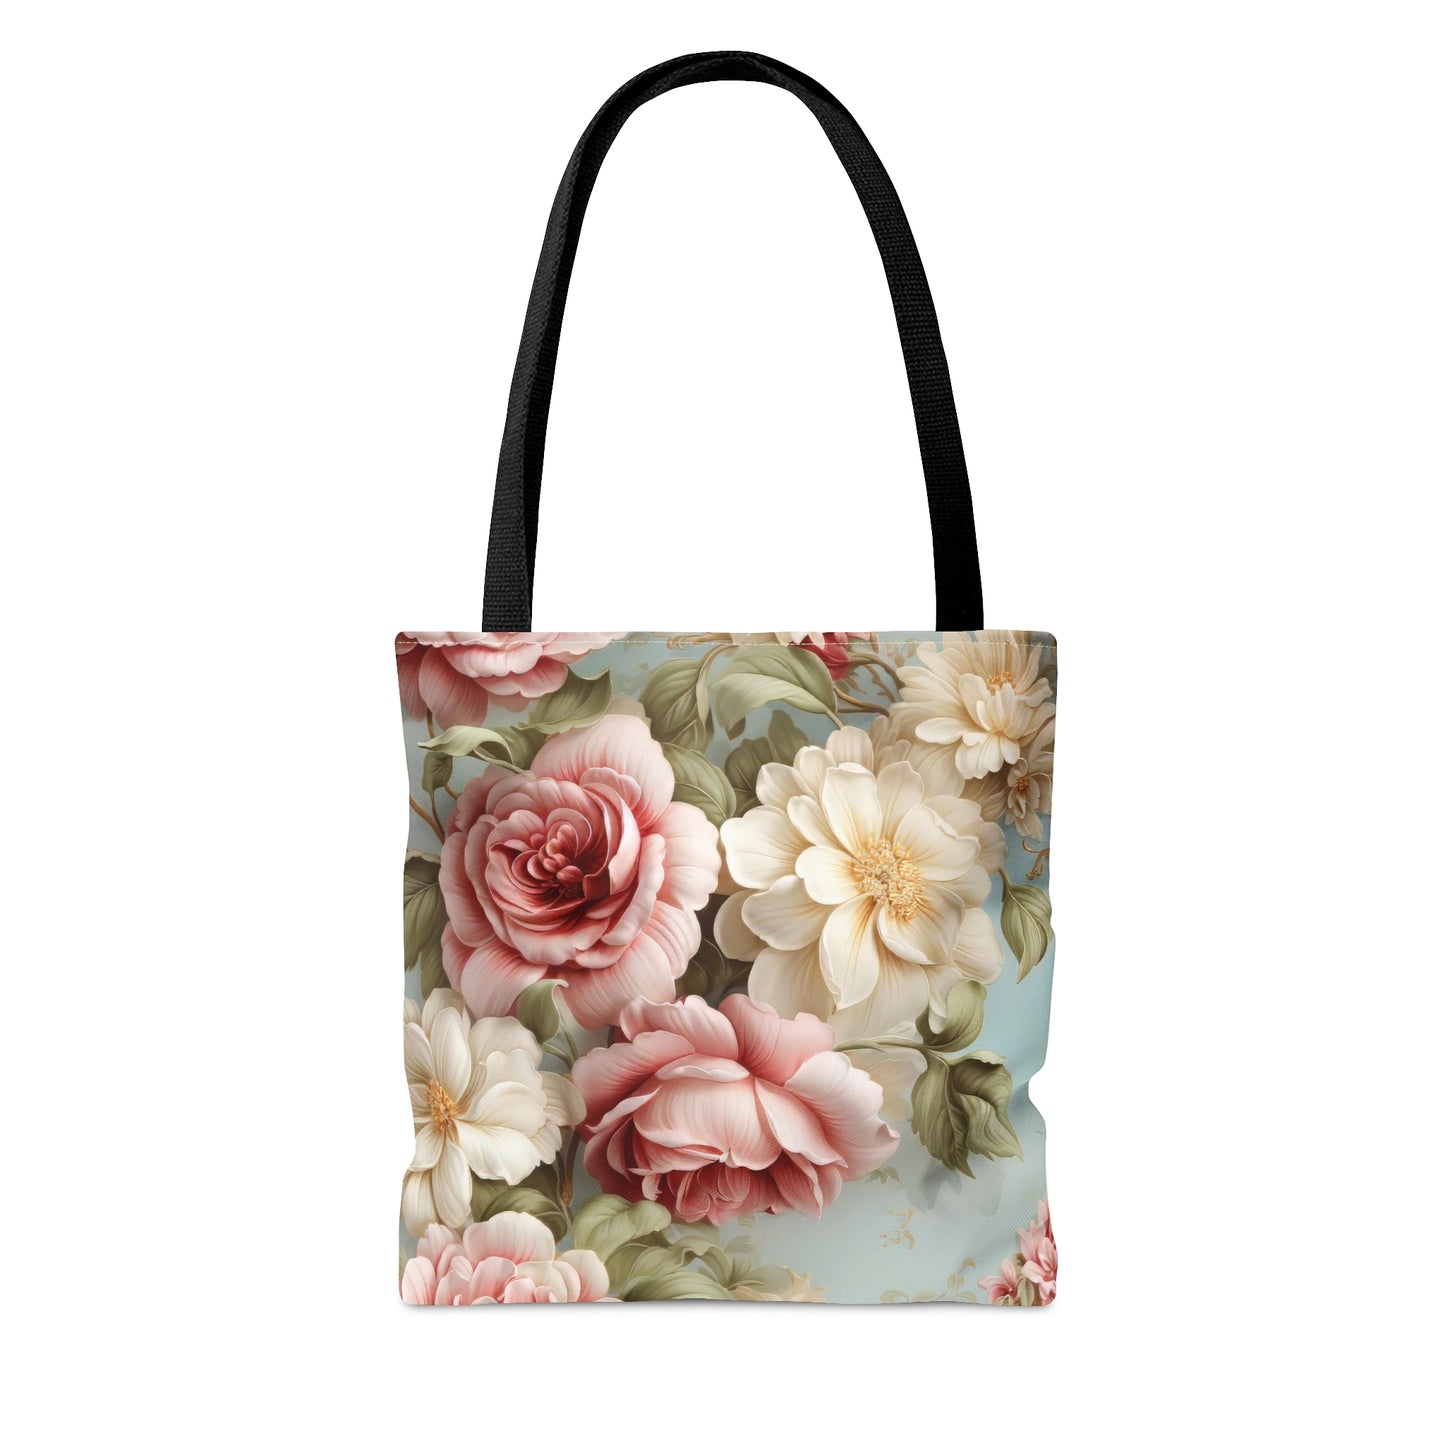 Floral Rose Tote Bag